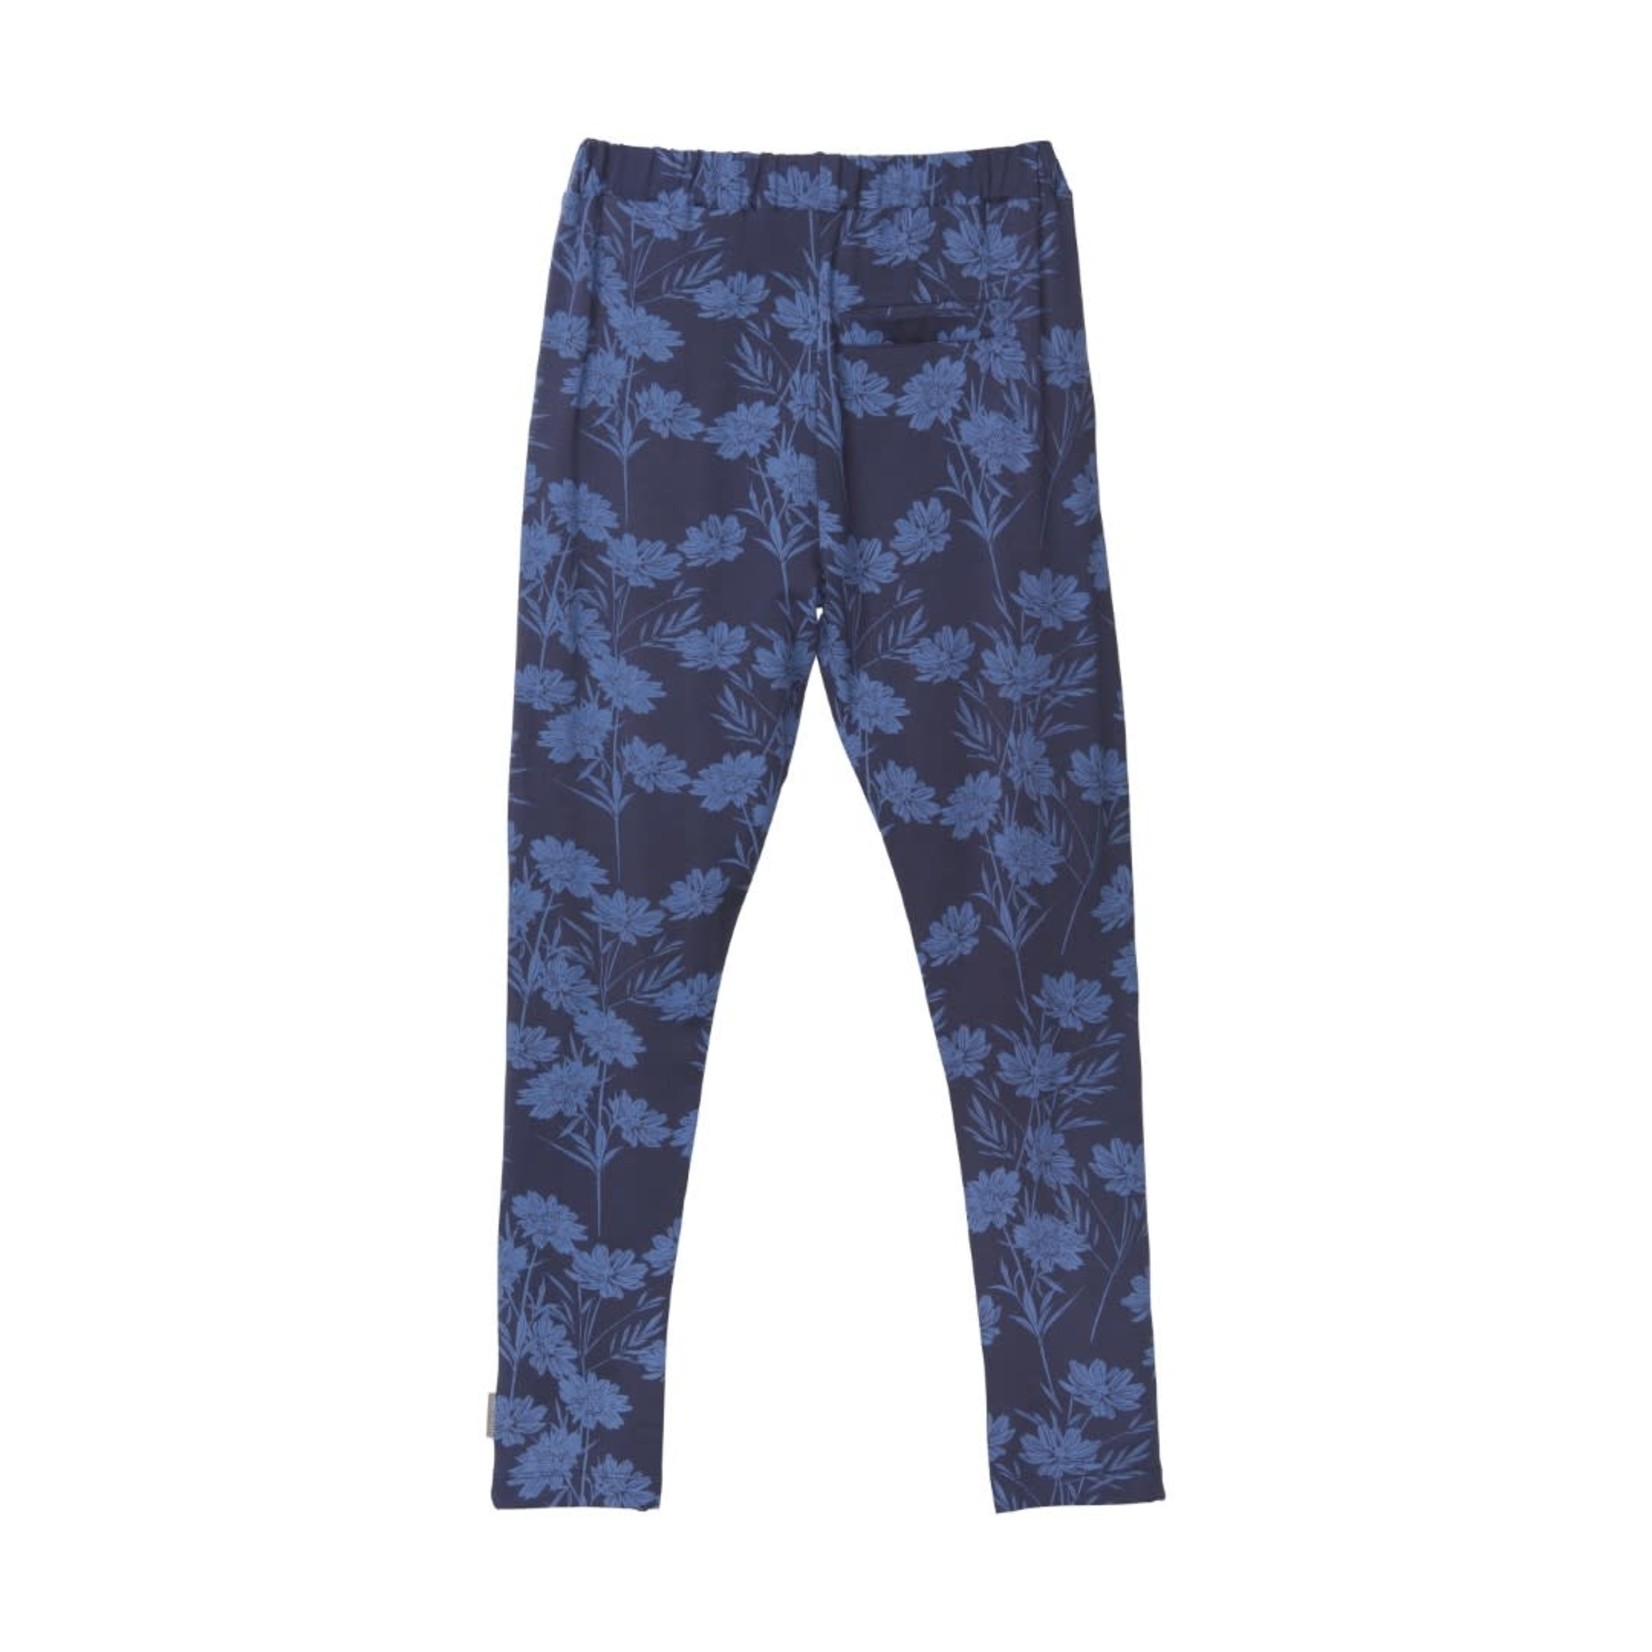 Creamie CREAMIE - Pantalon souple marine avec imprimé floral bleu